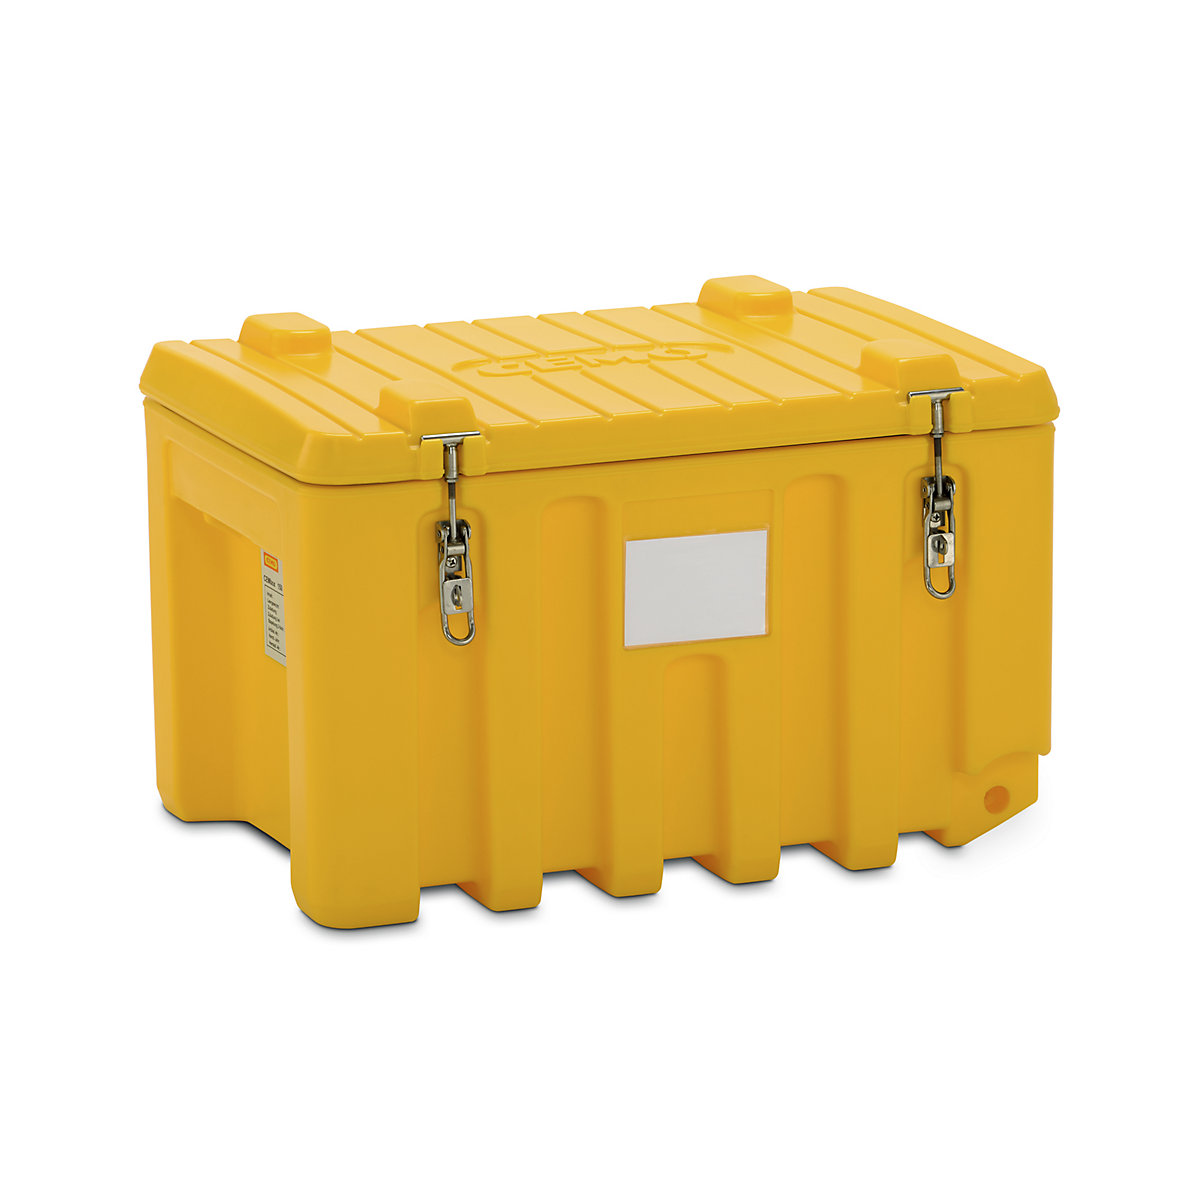 CEMO – Cutie universală din polietilenă, capacitate 150 l, capacitate portantă 100 kg, galben